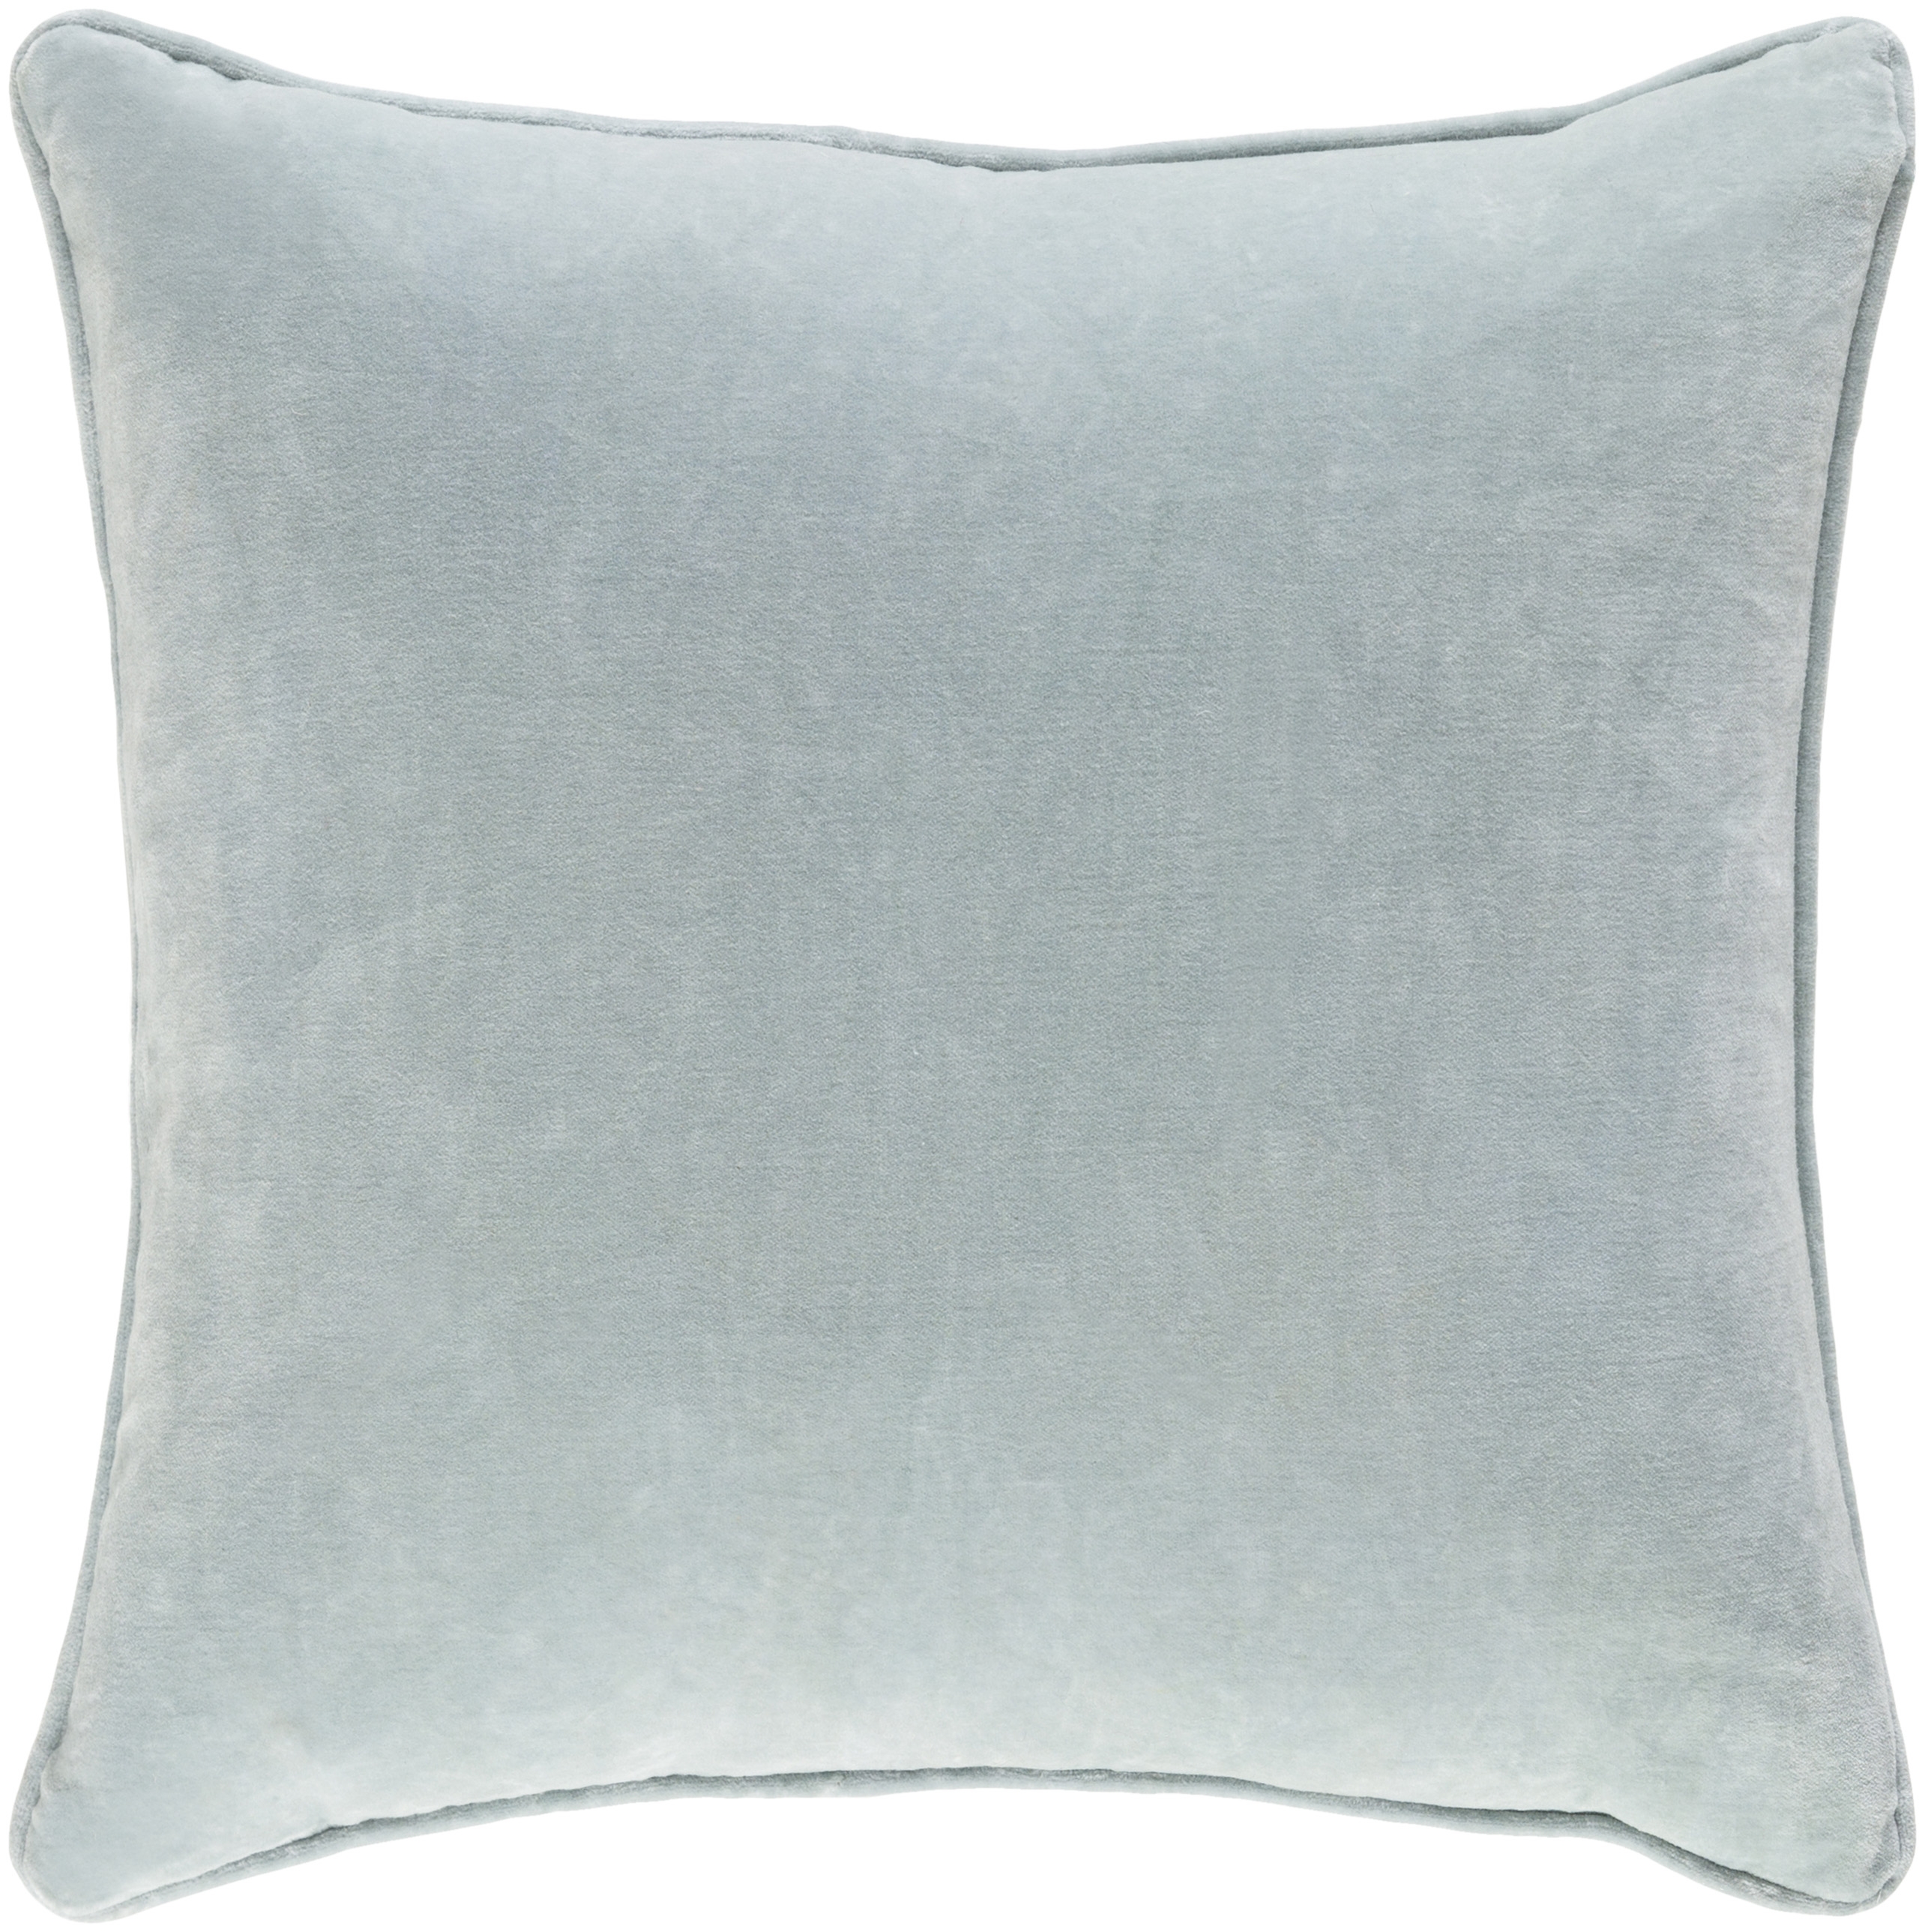 Safflower Pillow, Mint, 18" x 18" - Image 0